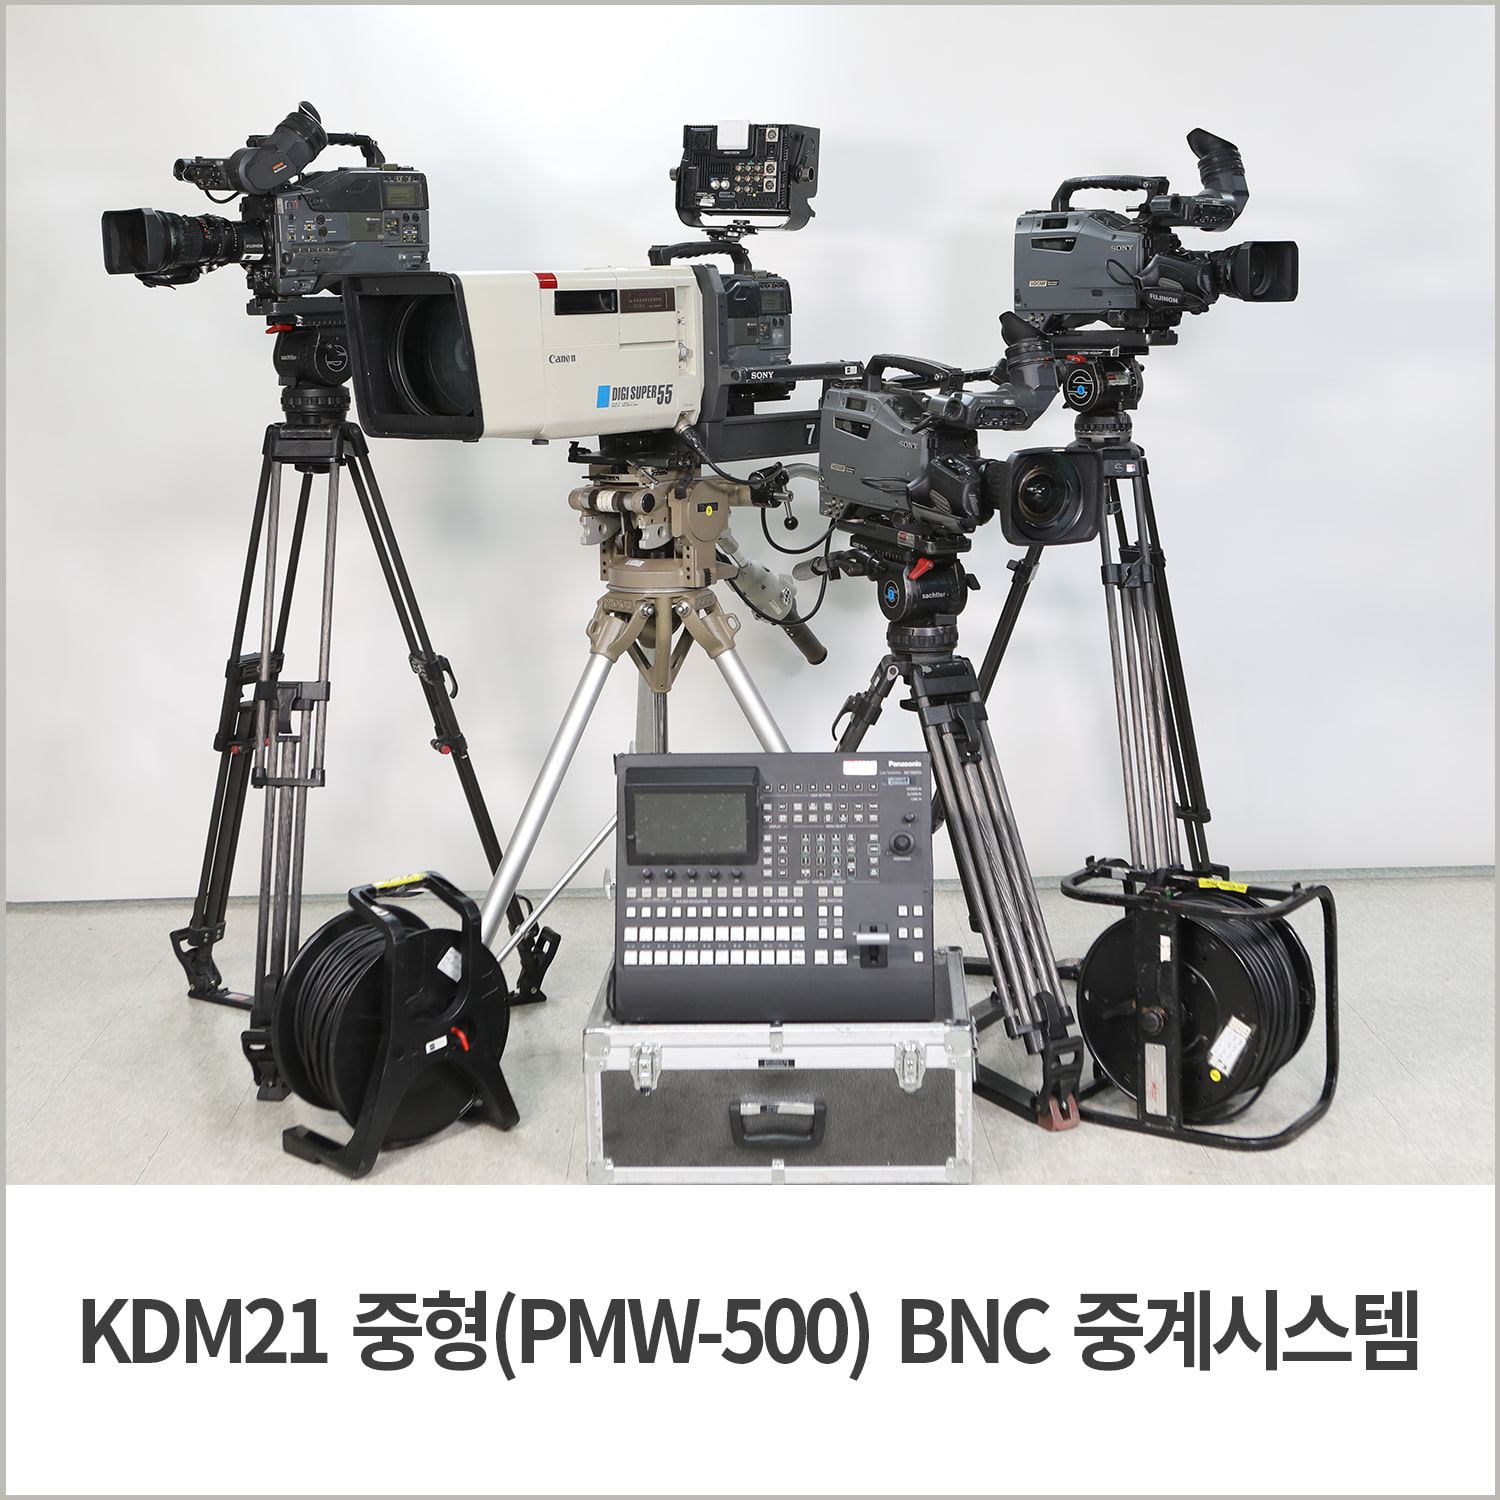 [중계시스템] KDM21 중형(PMW-500) BNC 중계시스템